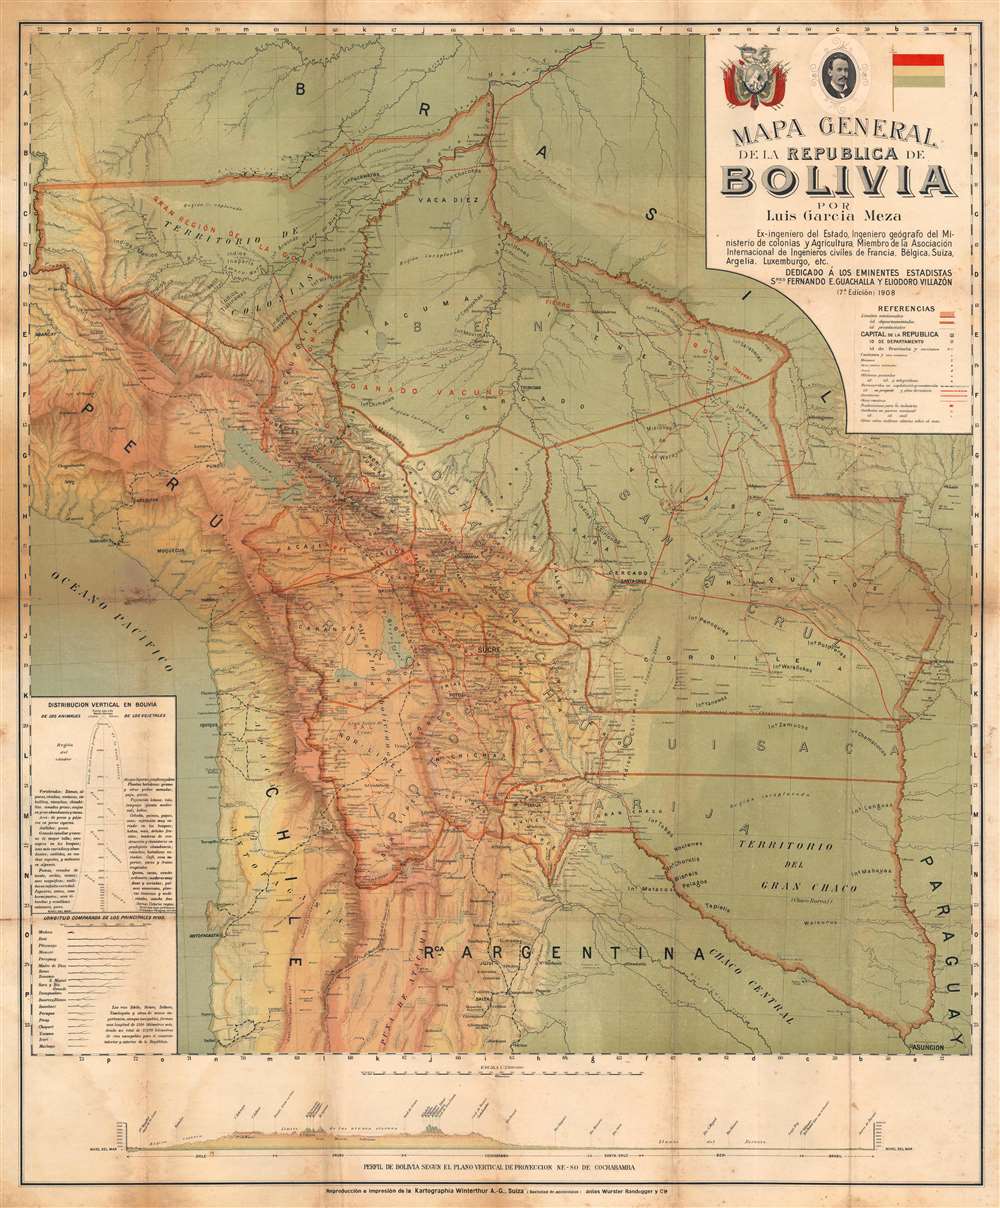 Mapa General de la Republica de Bolivia. - Main View